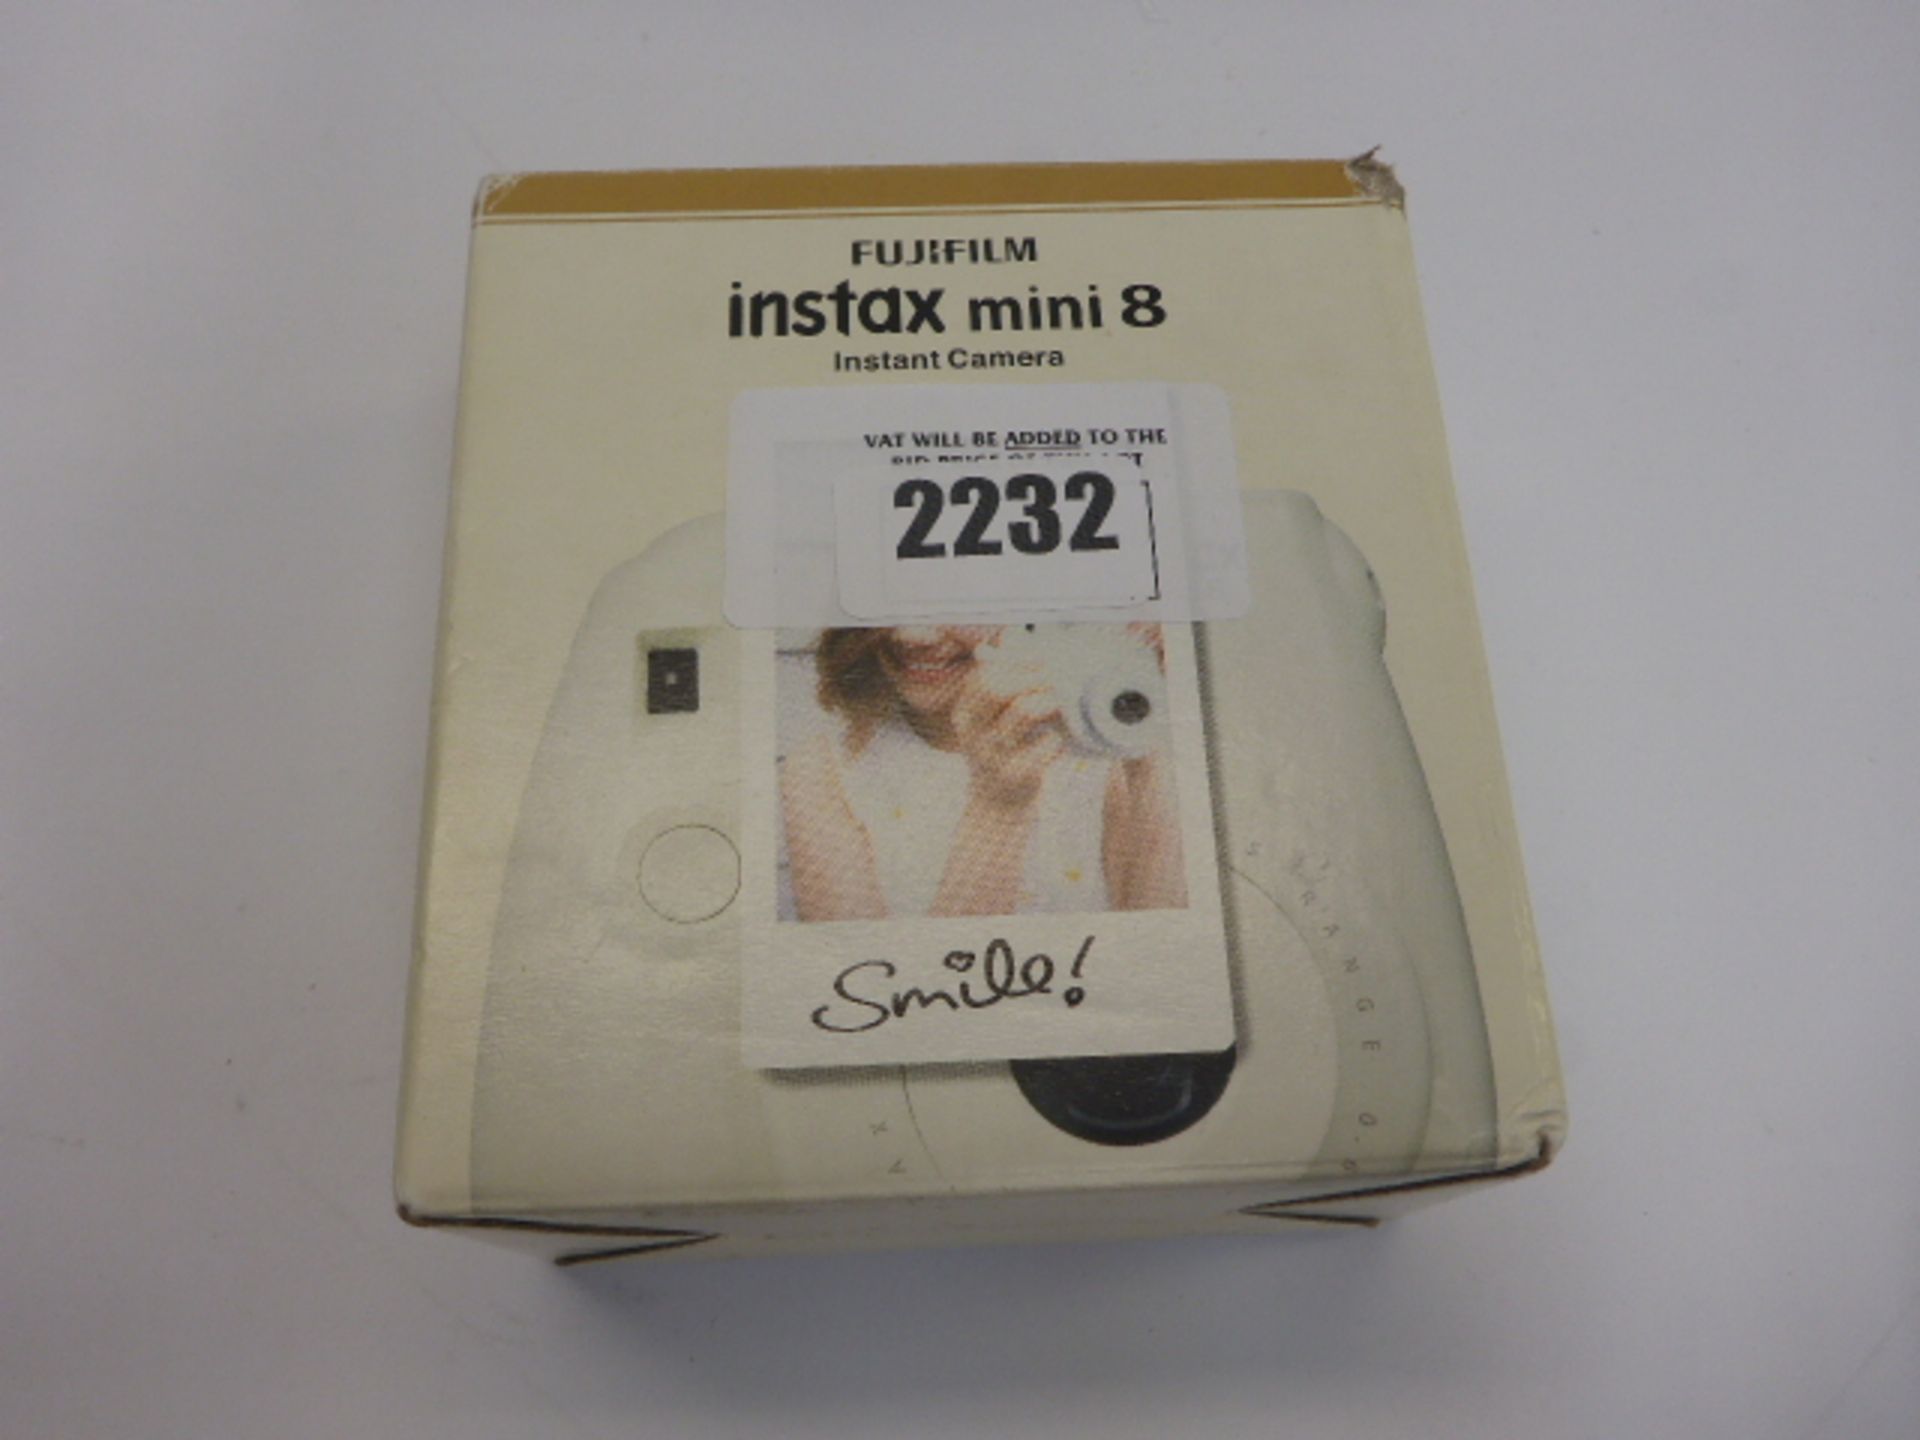 Fujifilm Instax Mini 8 in white